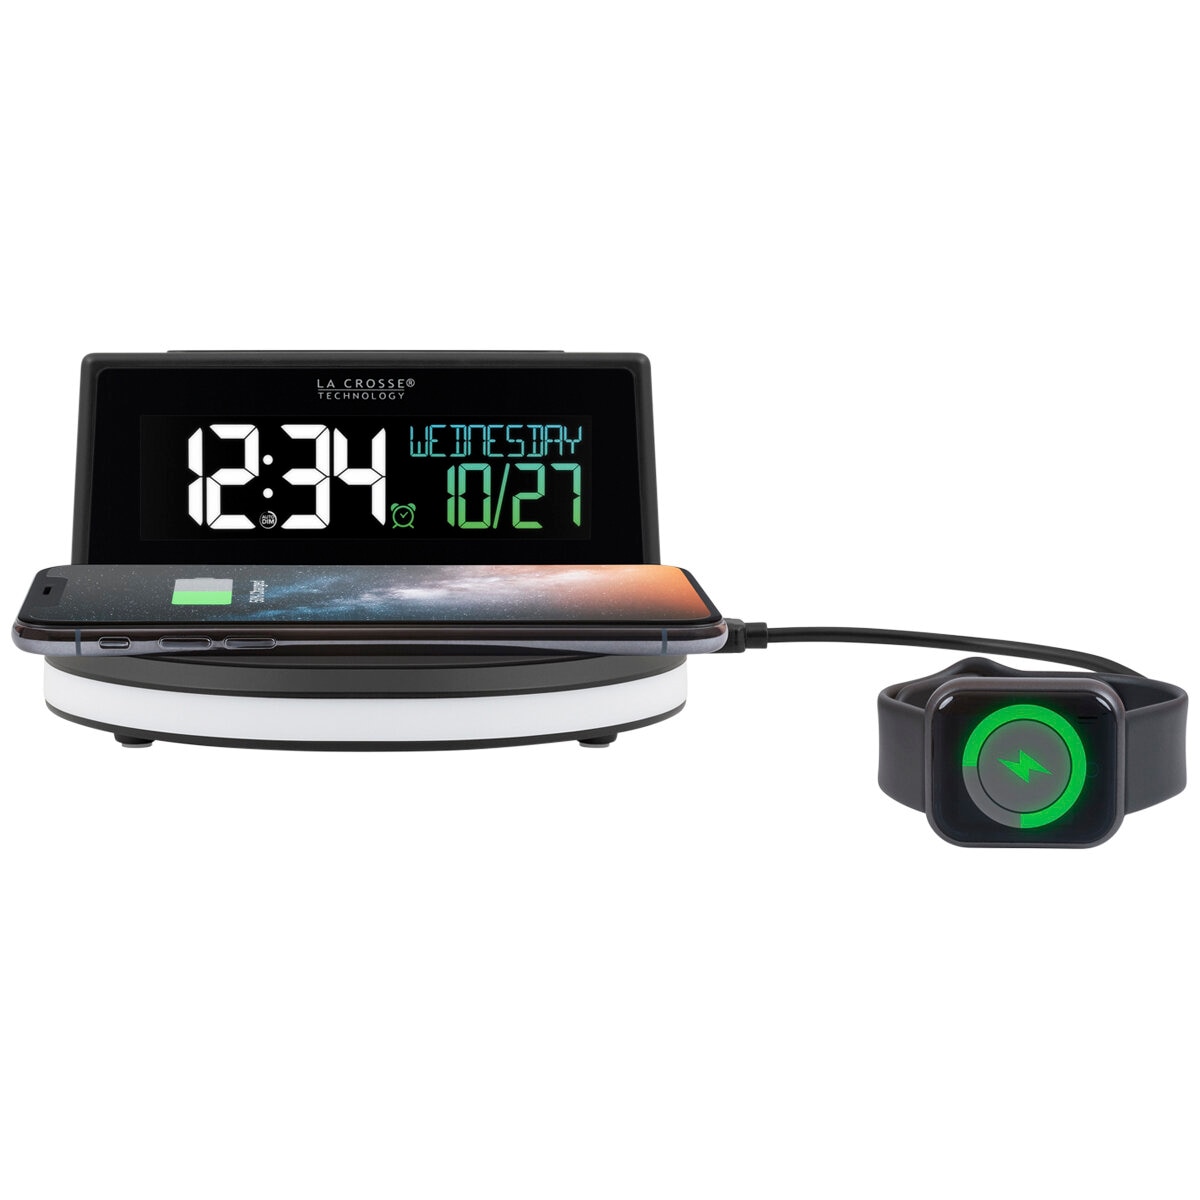 LaCrosse Glow Alarm Clock With Temperature